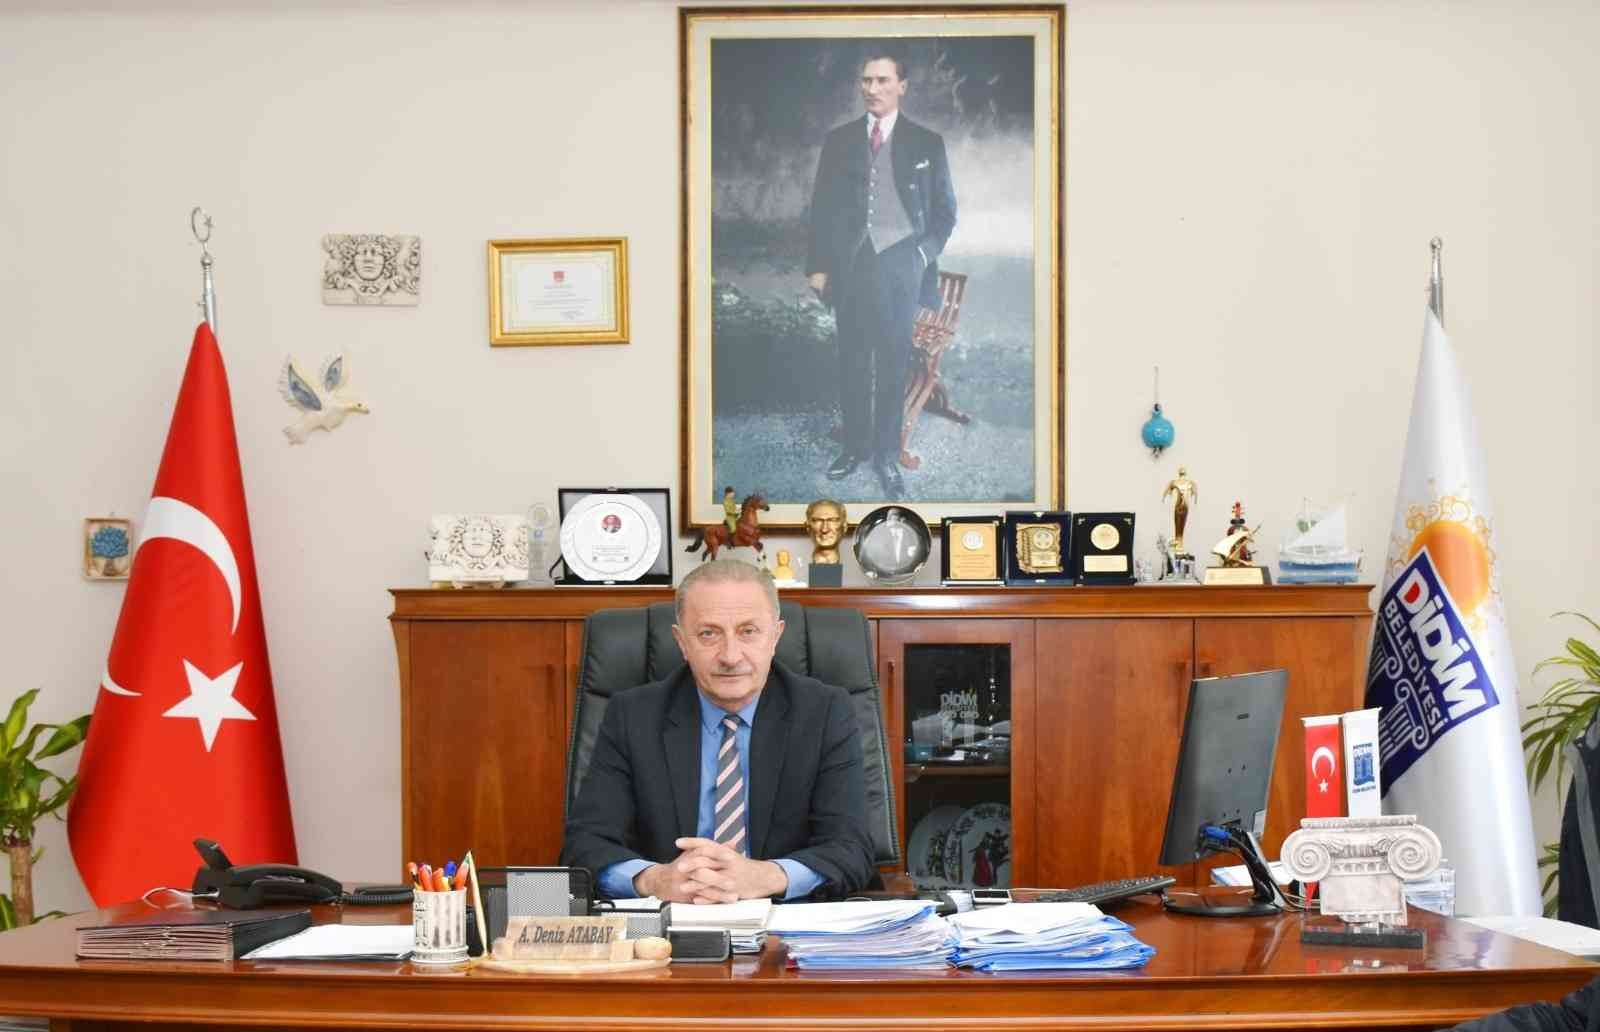 Başkan Atabay, Atatürk’ün sözünü hatırlatarak savaşa karşı çıktı #aydin